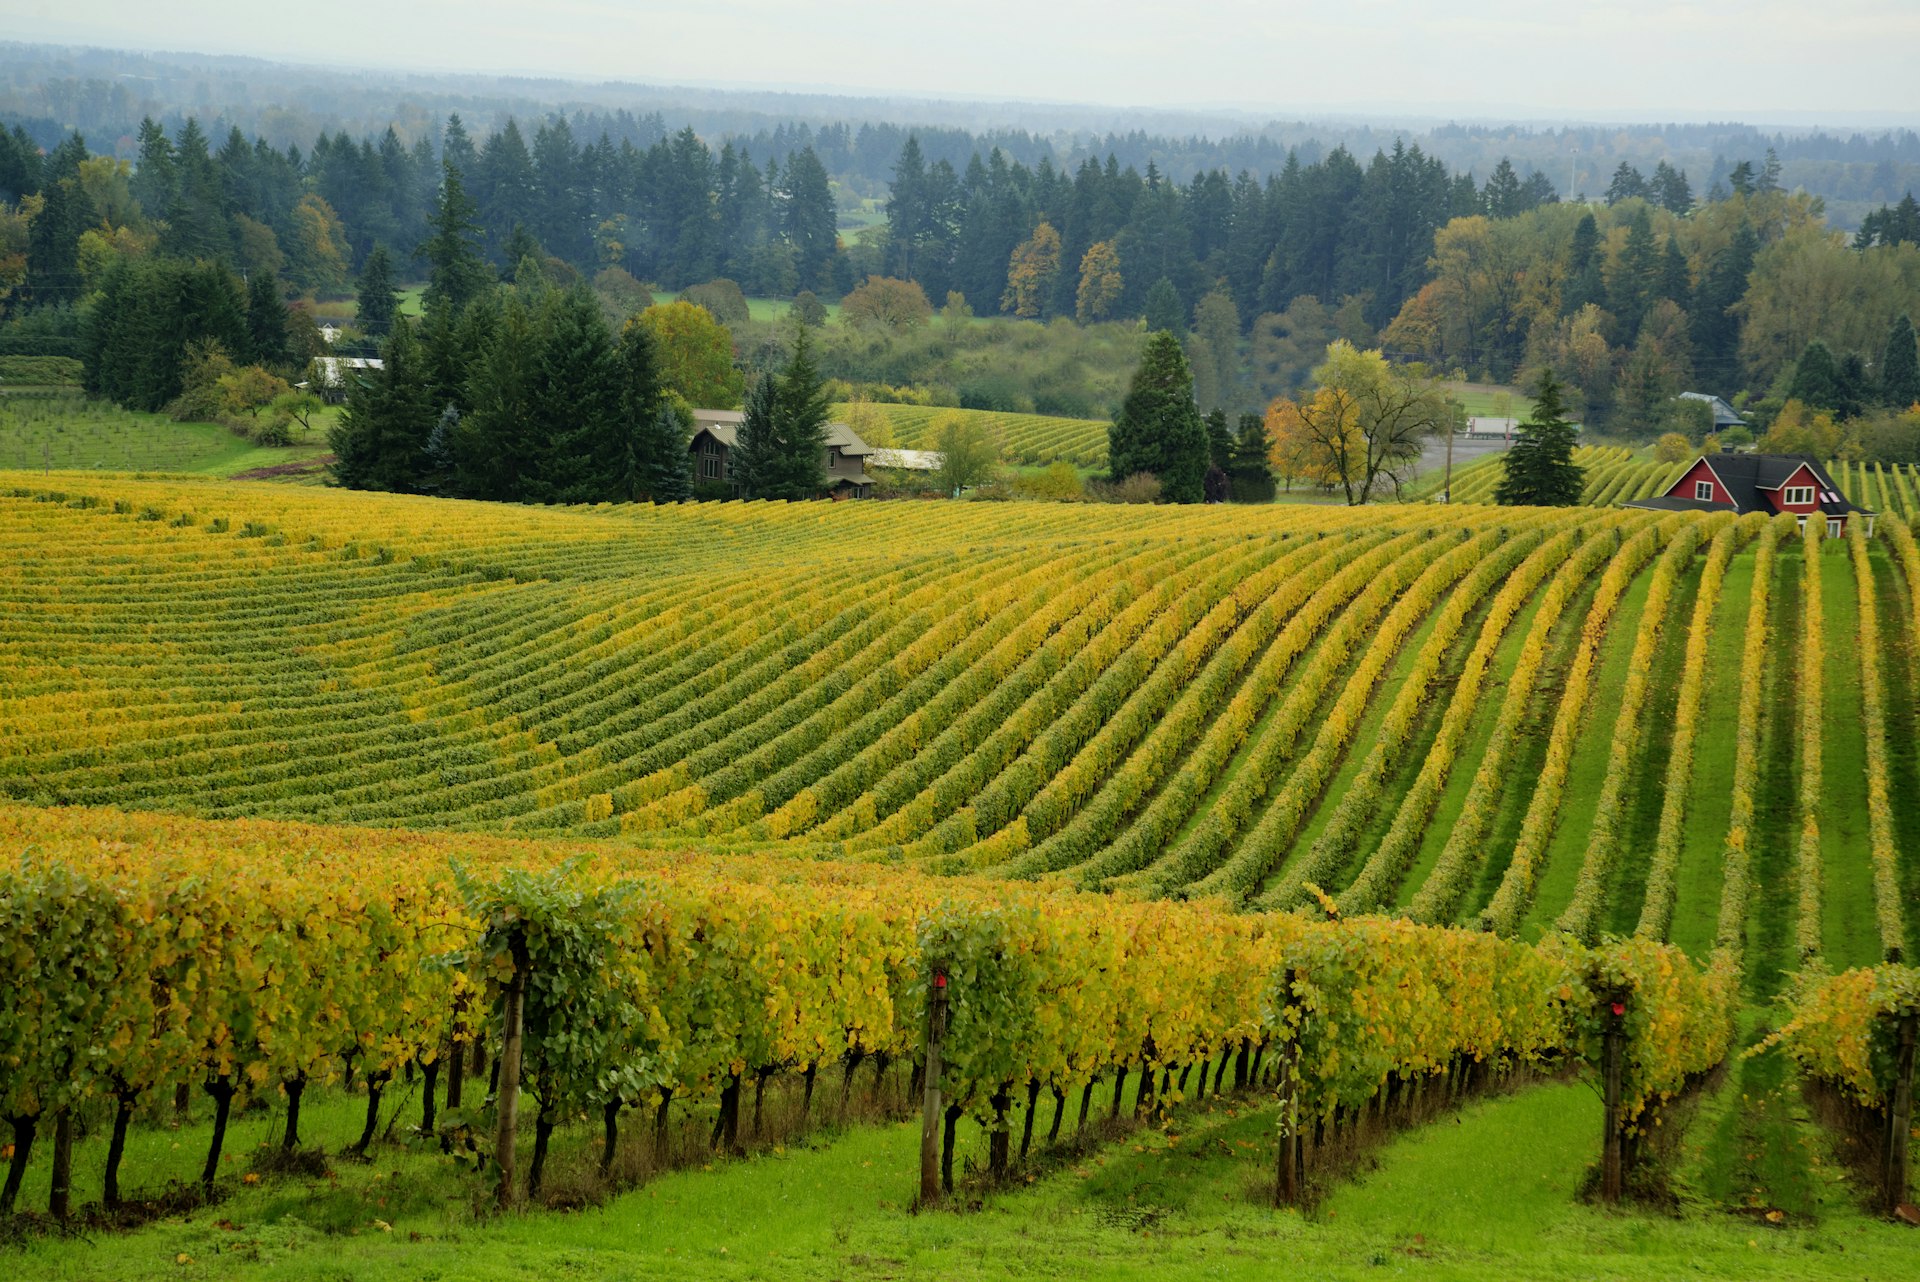 A vineyard in Oregon's Willamette Valley